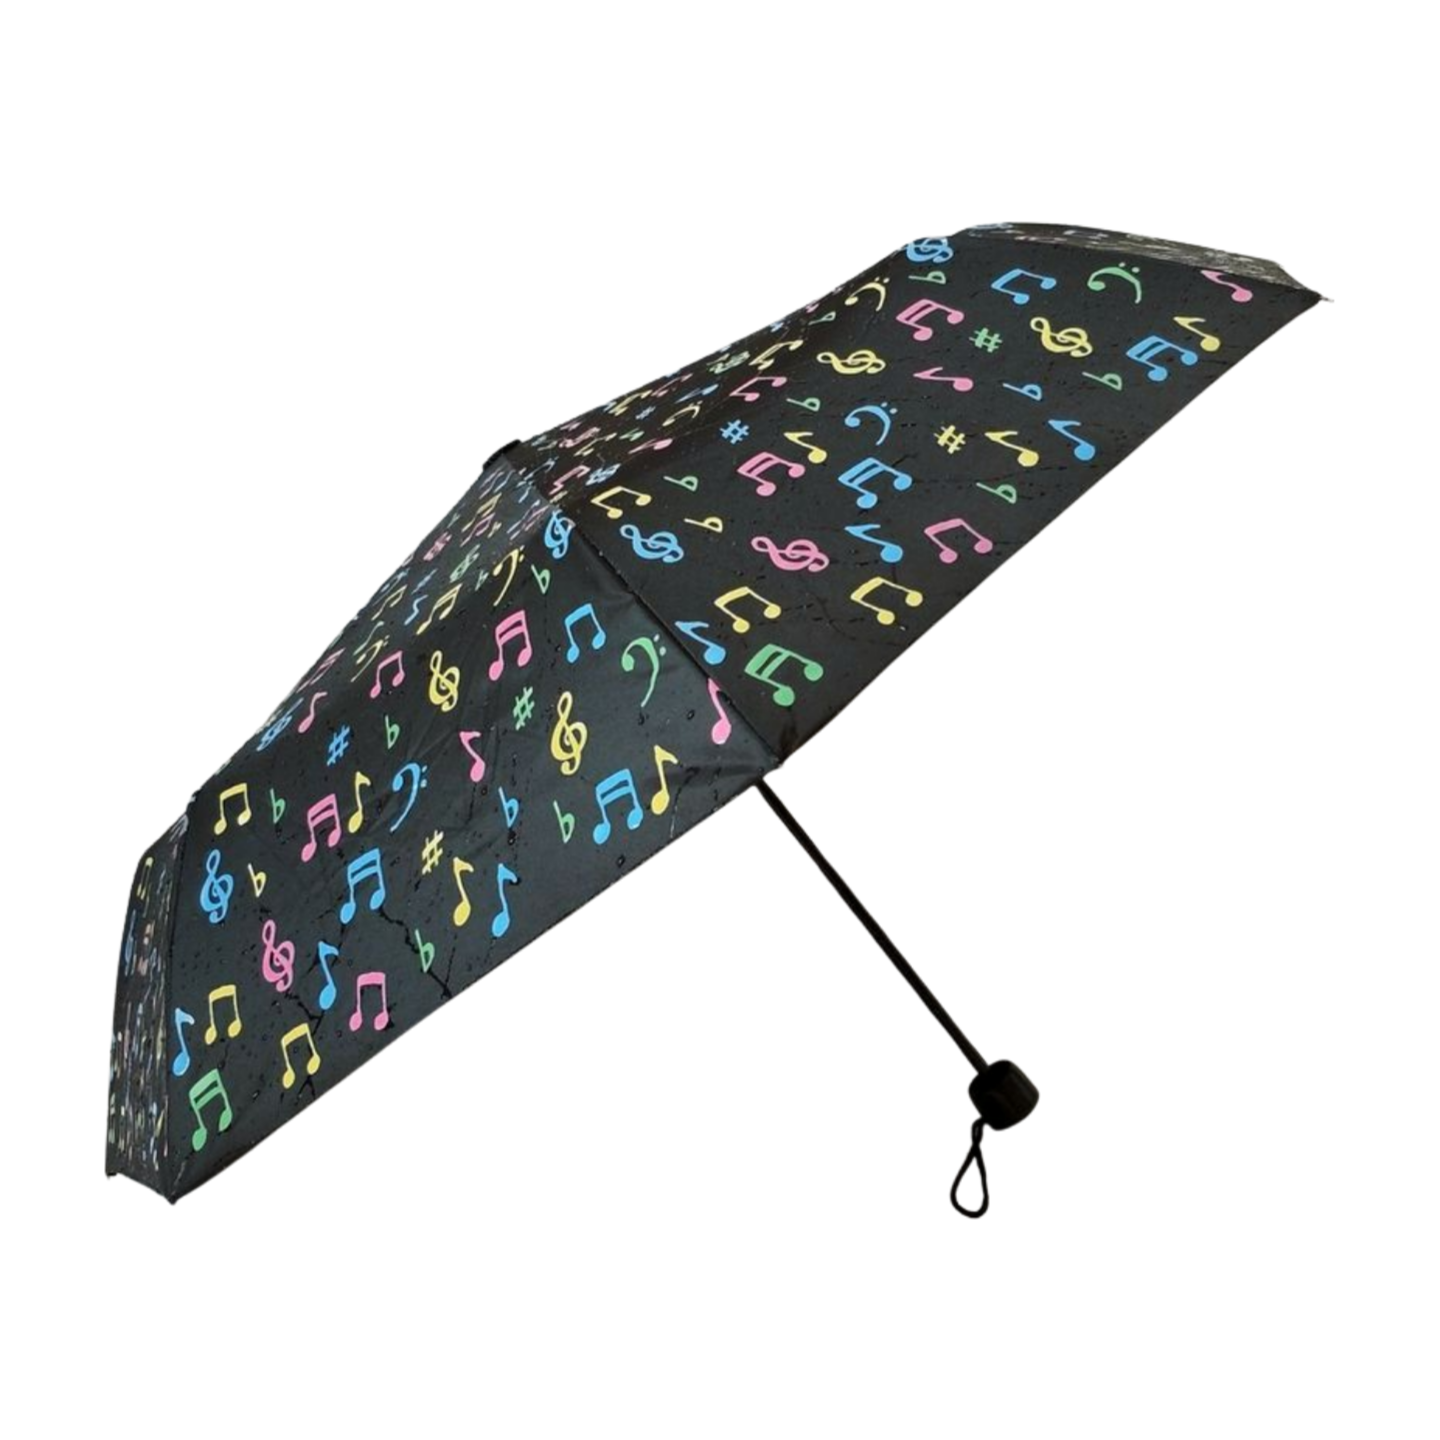 sklopivi kišobran koji mijenja boju, kišobran za promotivni poklon, kompaktni kišobran, mali kišobran